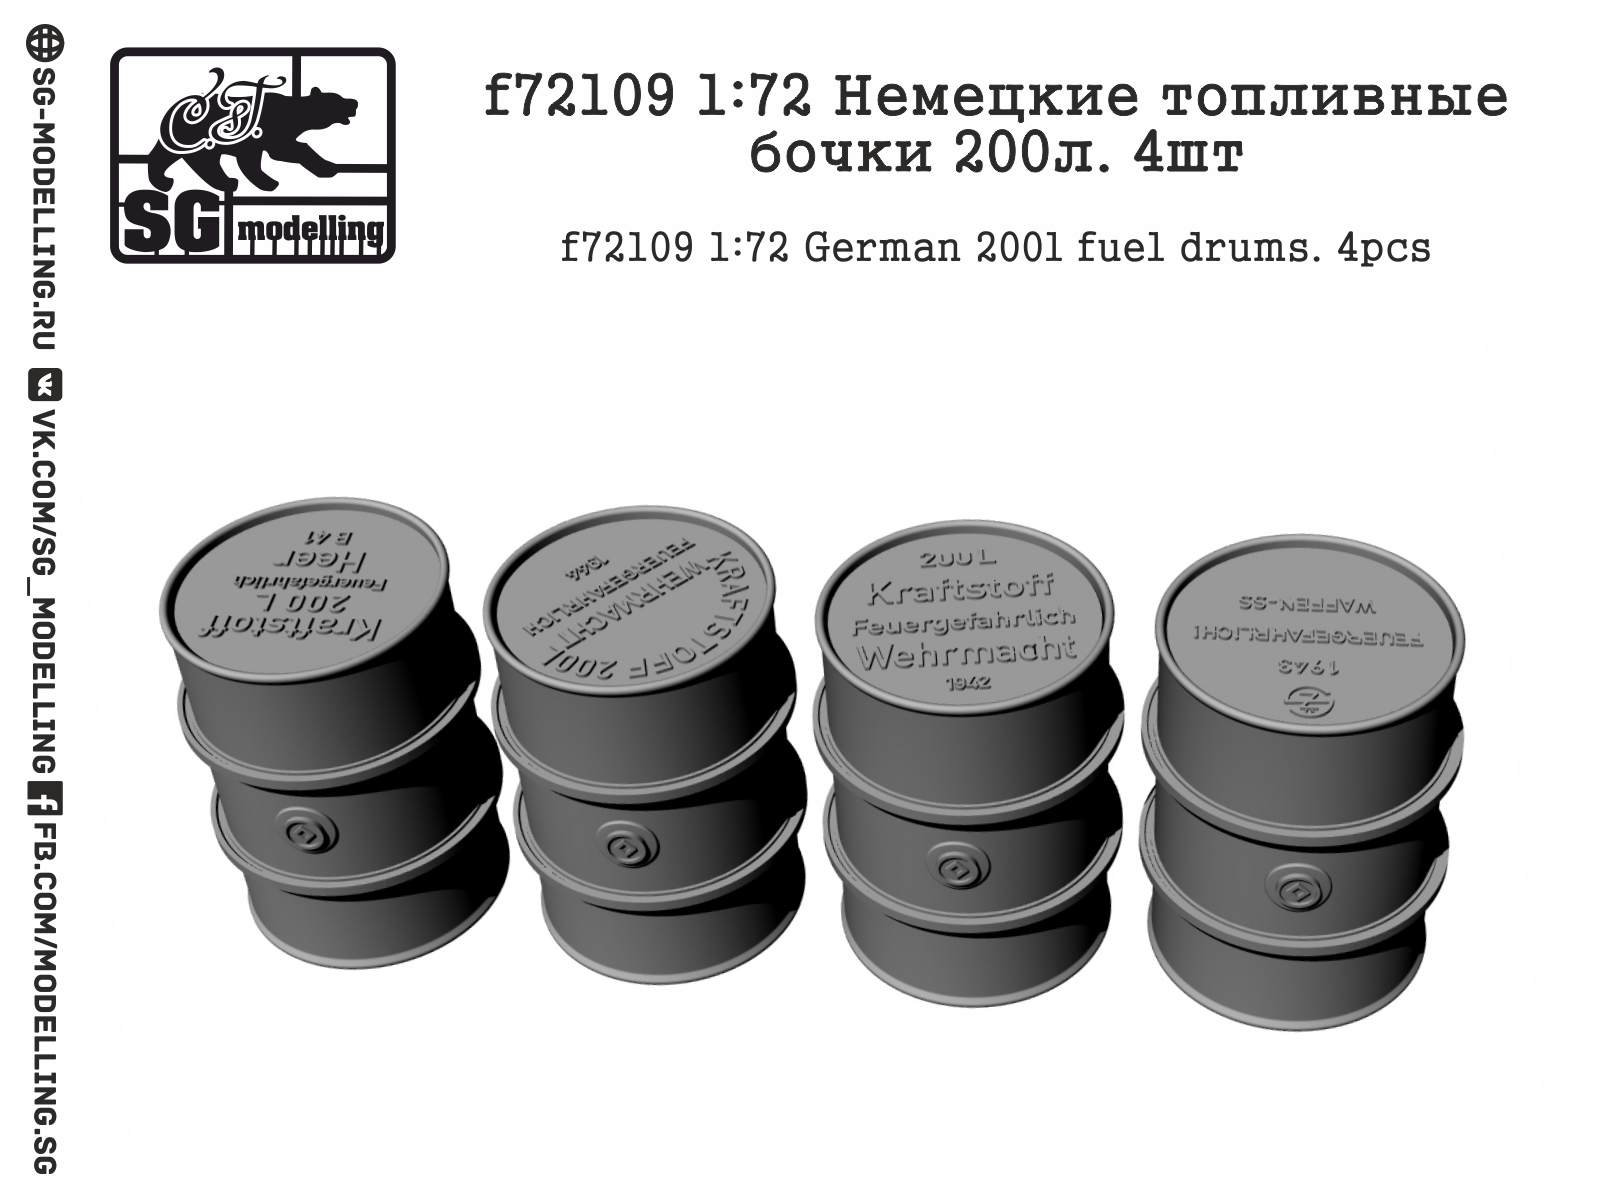 WW2 German 200l fuel drums (4pc)